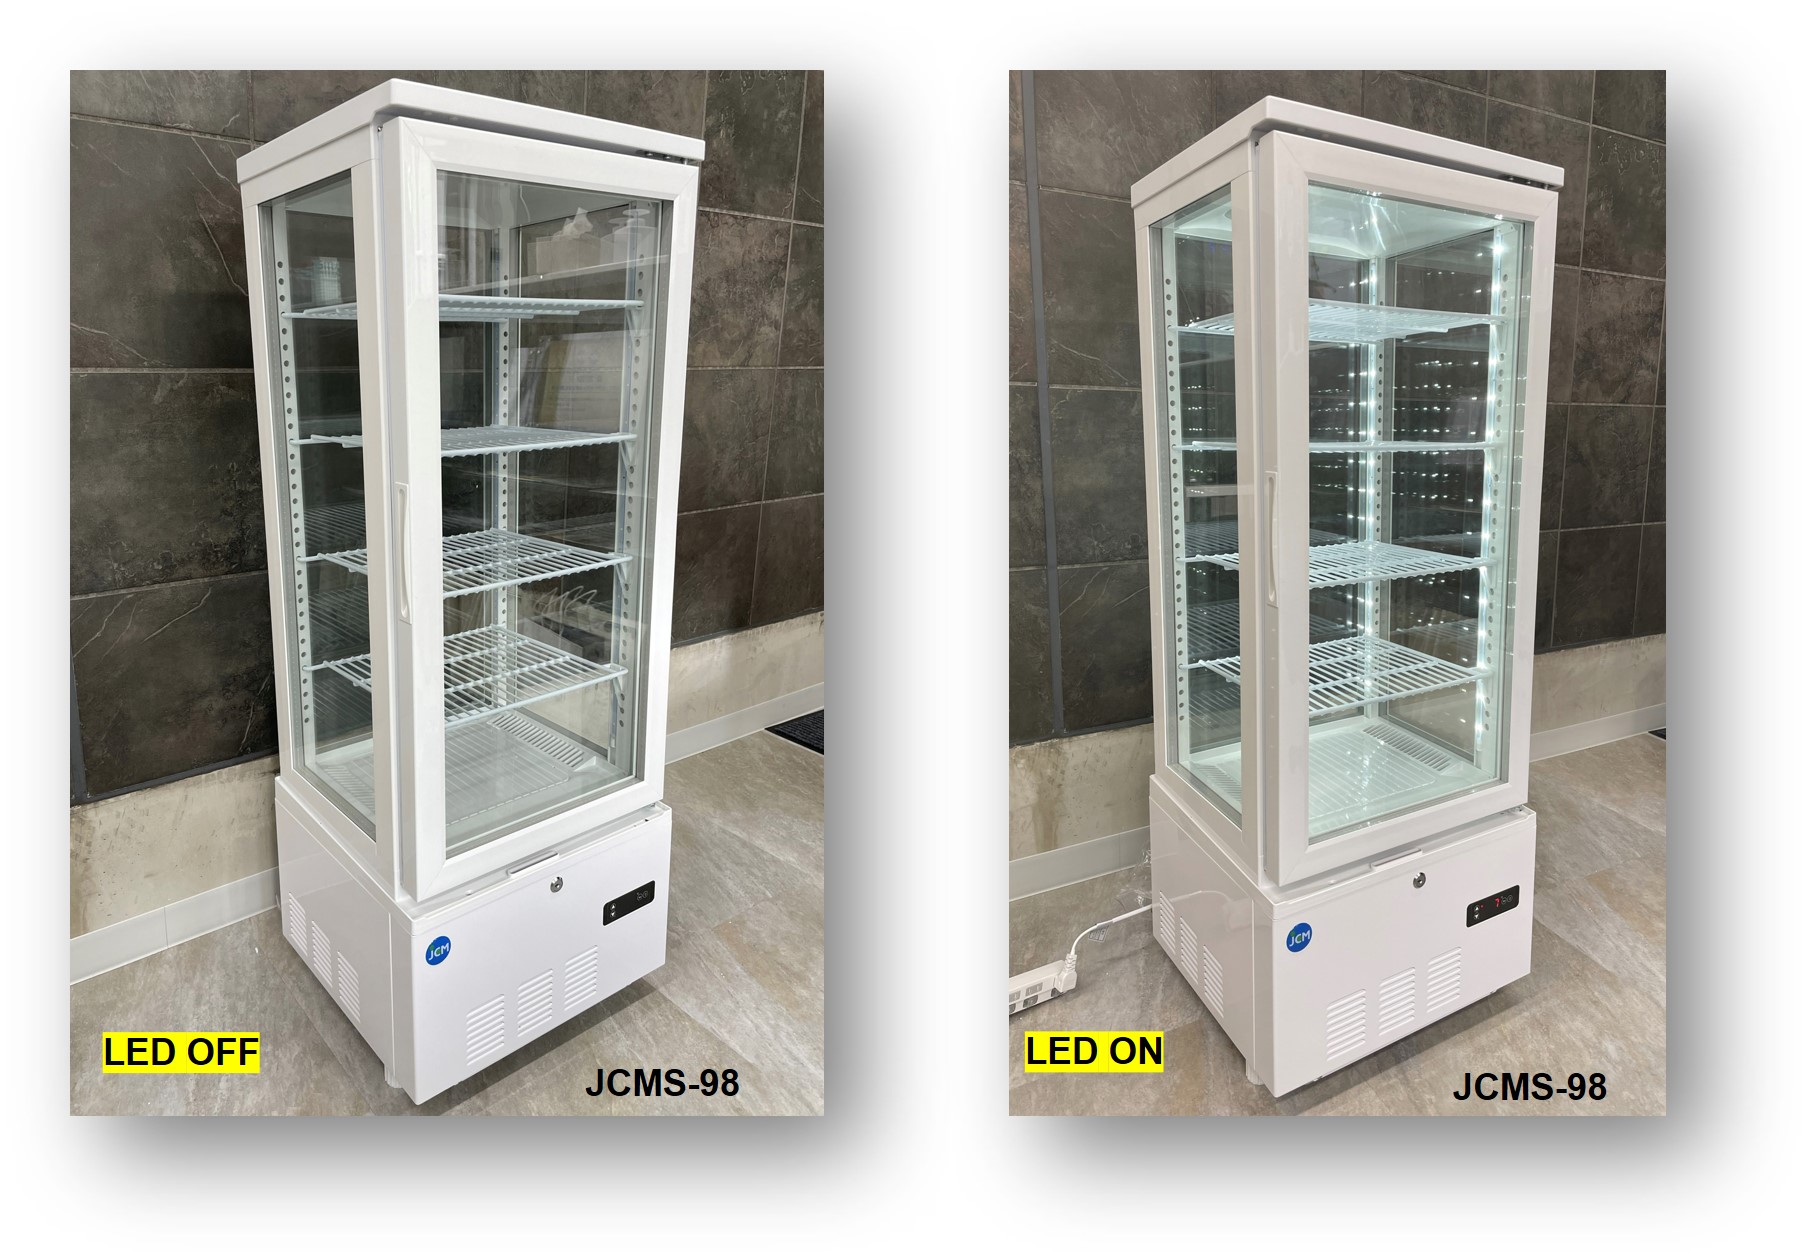 4面ガラス冷蔵ショーケース 四面ガラス冷蔵ショーケース ビールショーケース 省エネ型冷蔵庫 業務用冷蔵庫 保冷庫 RITS-188 LED 鍵付 - 7